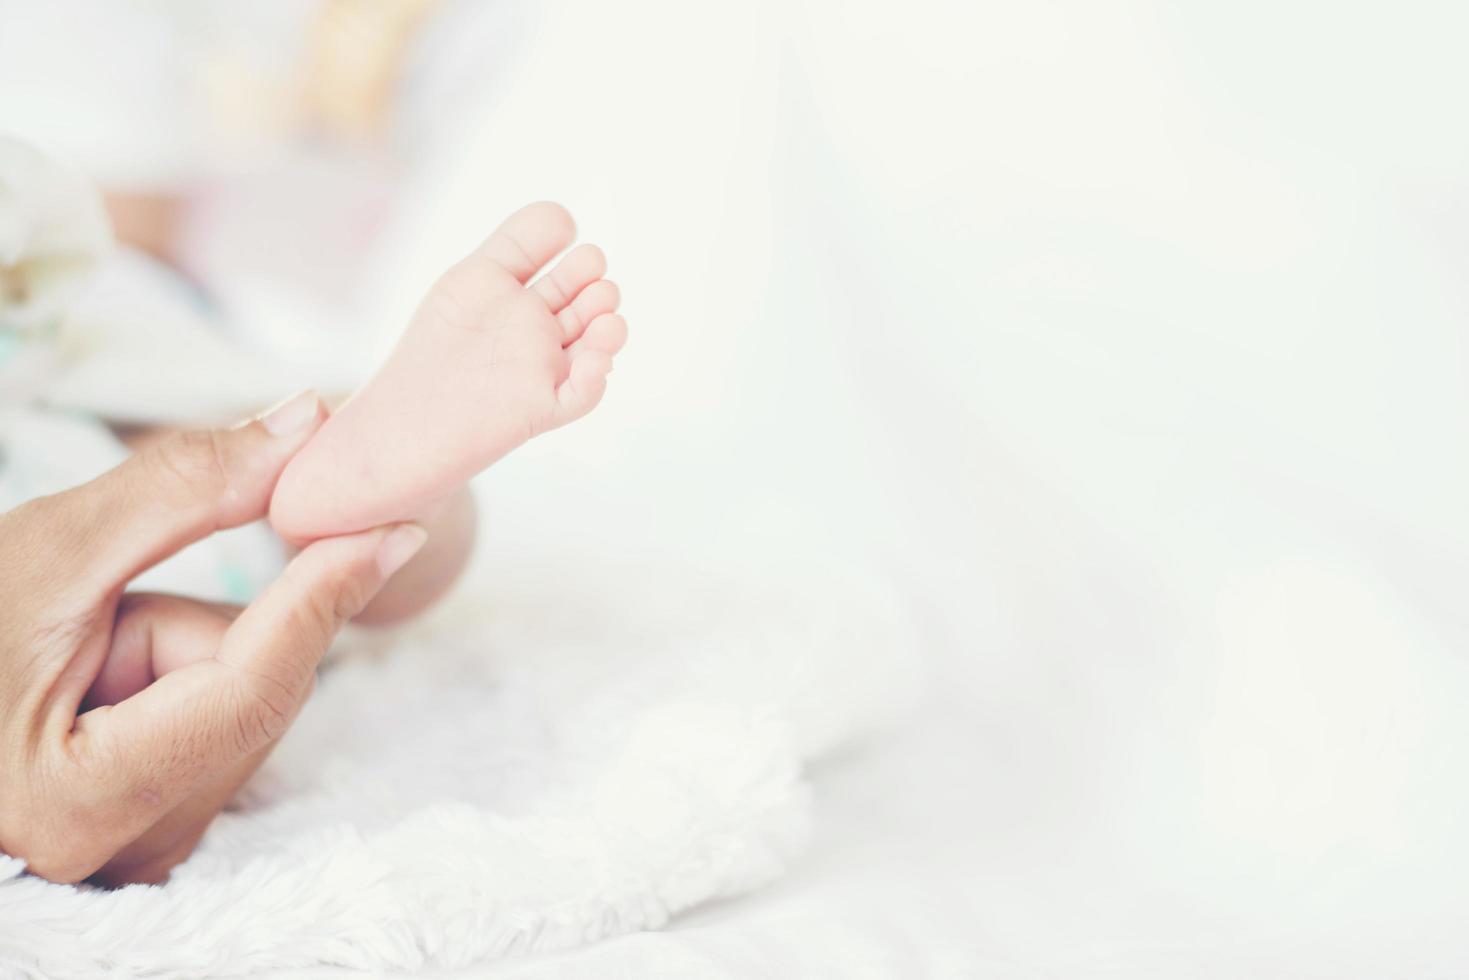 pés do bebê newbron nas mãos da mãe. foto